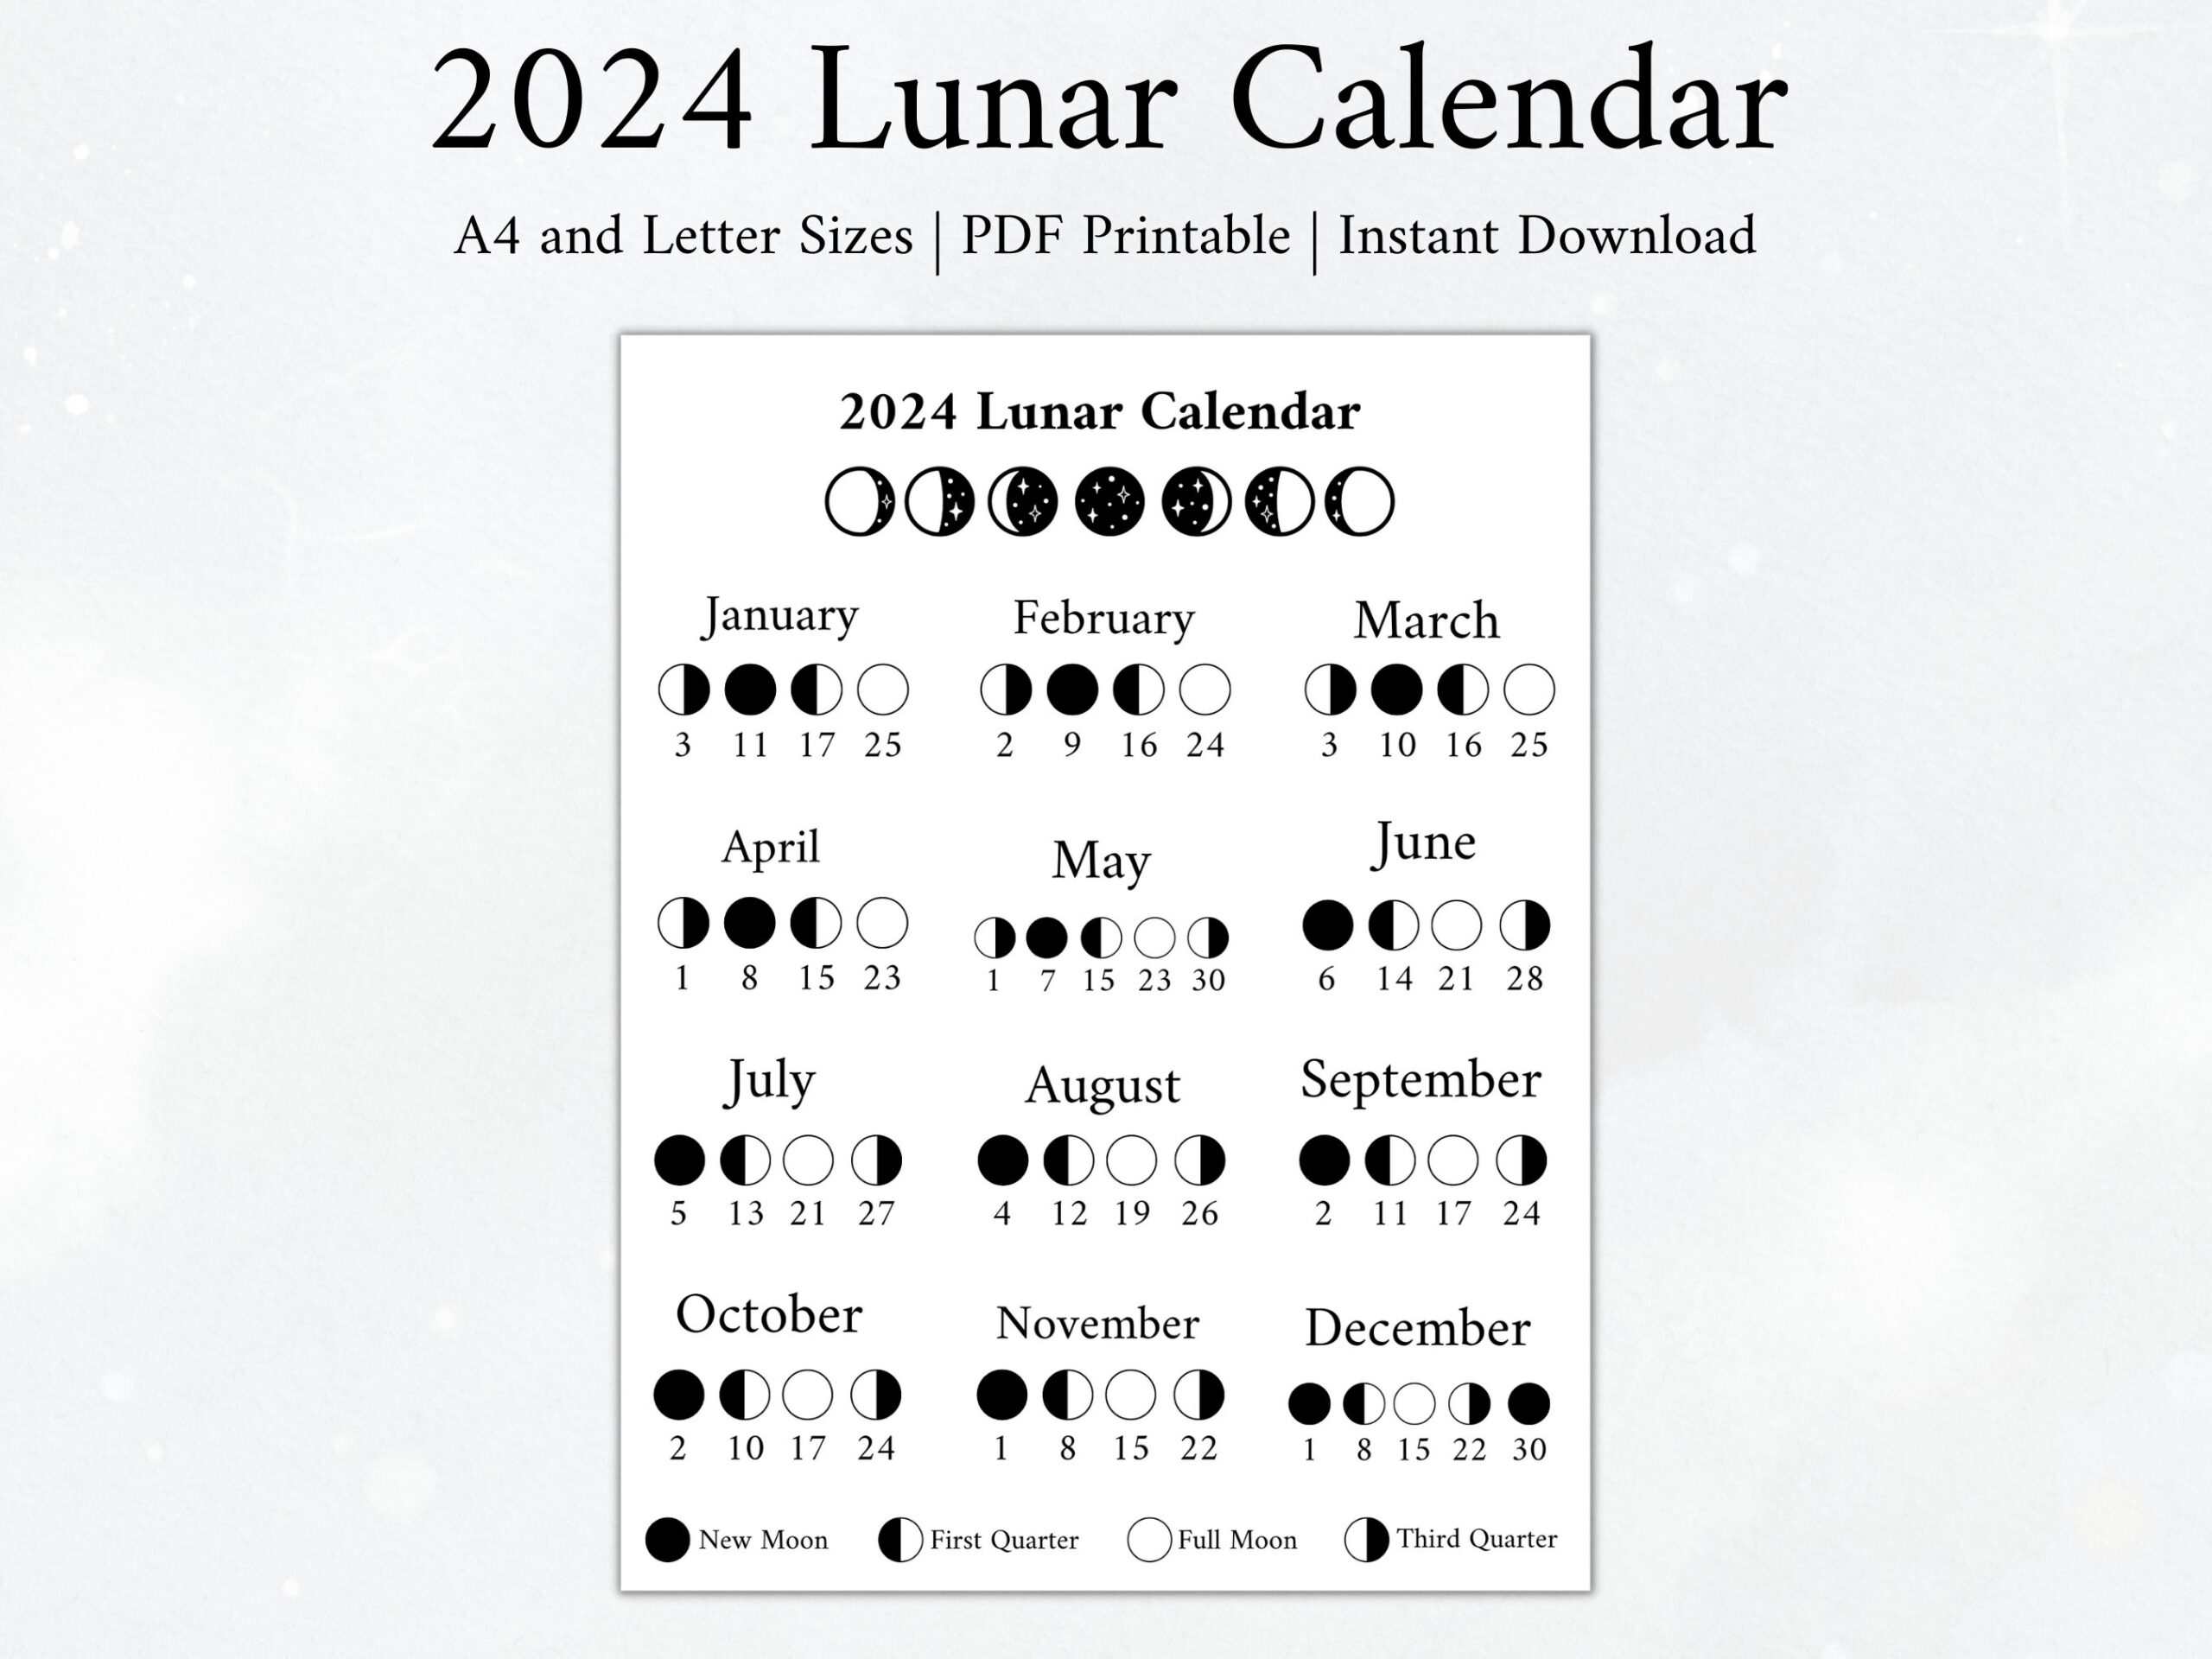 2024 Moon Calendar Moon Phase Calendar Lunar Calendar 2024 - Etsy for Calendar With Moon Phases 2024 Printable